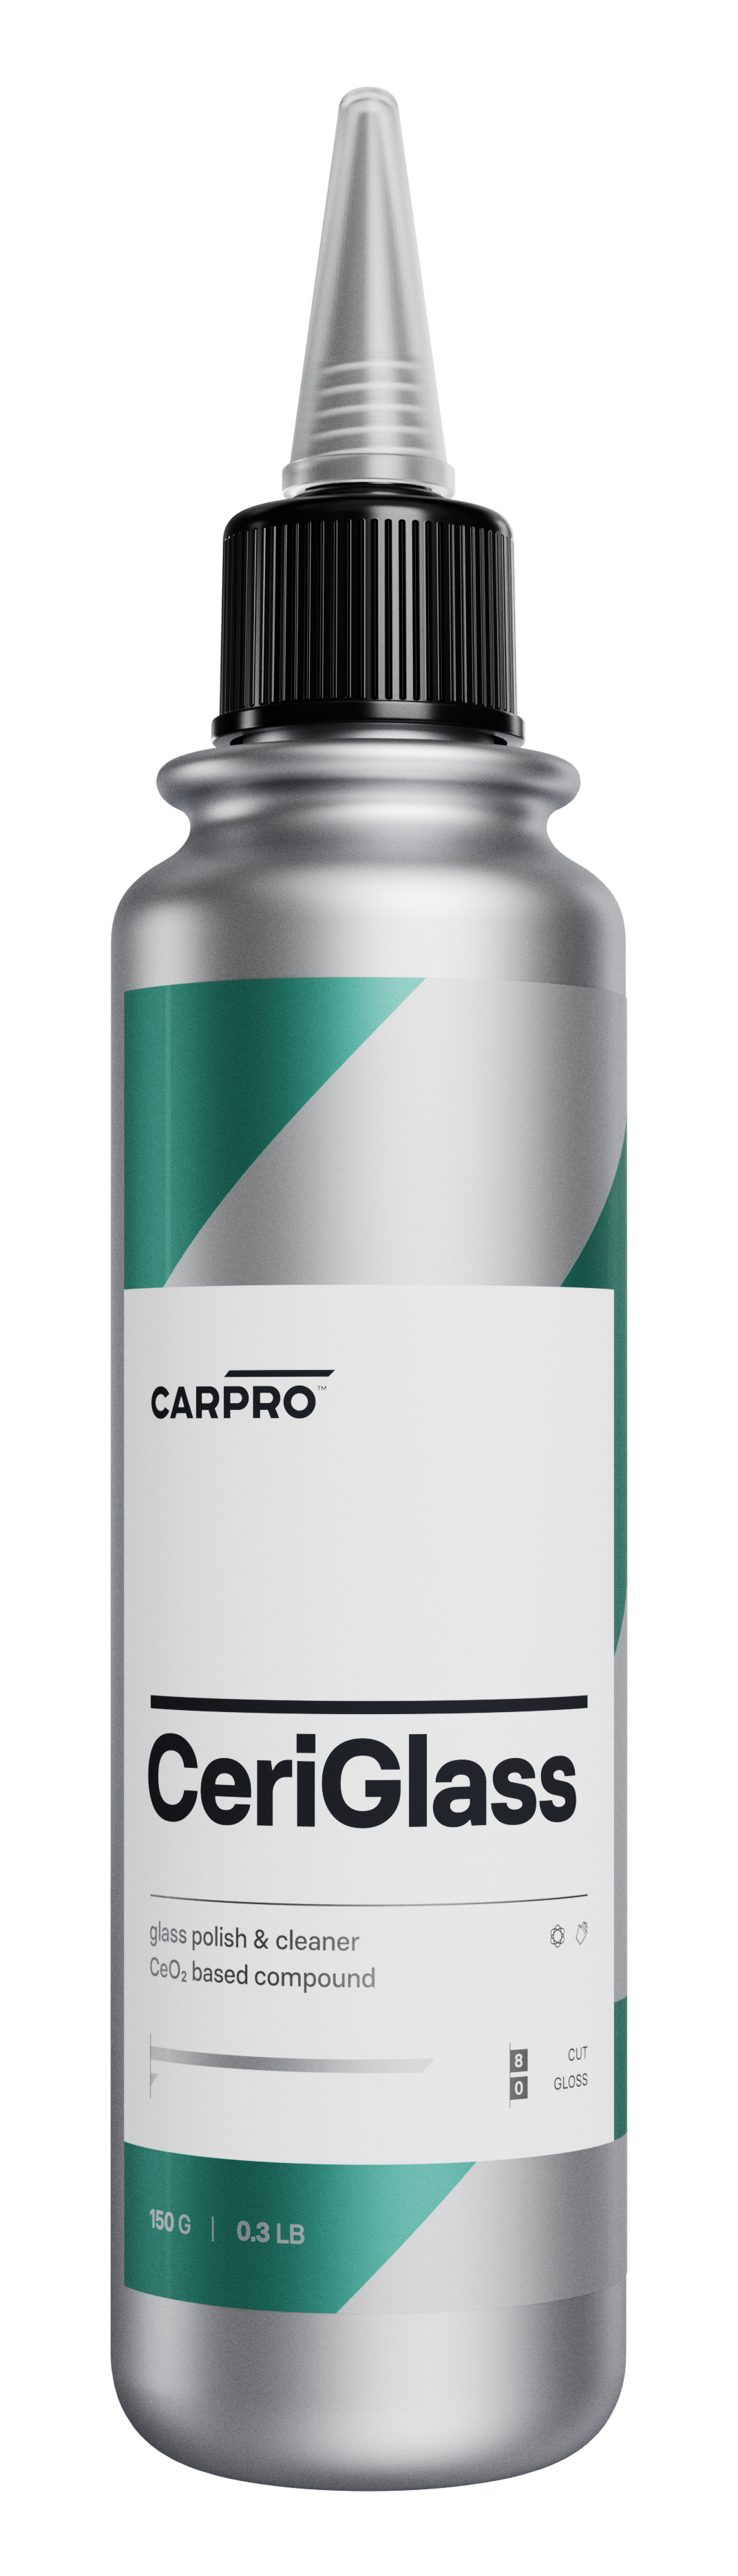 CARPRO CeriGlass - Glass polish